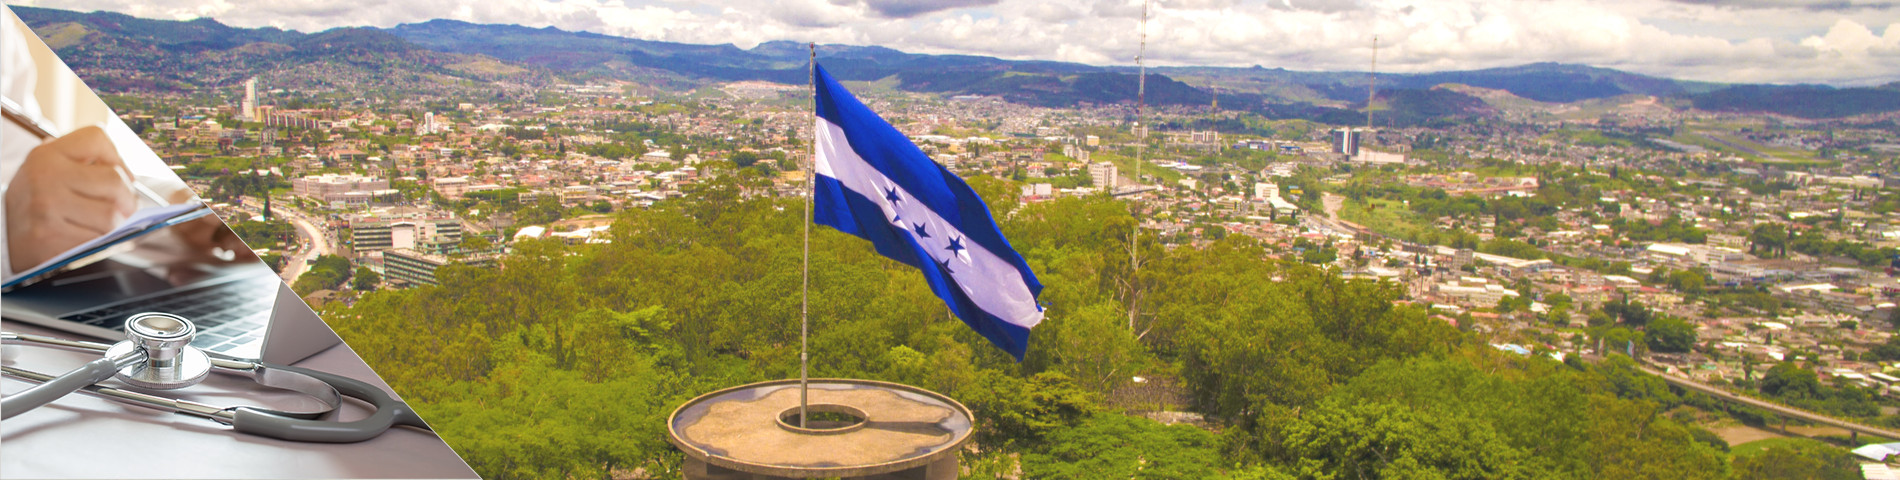 Honduras - Spanisch für Mediziner